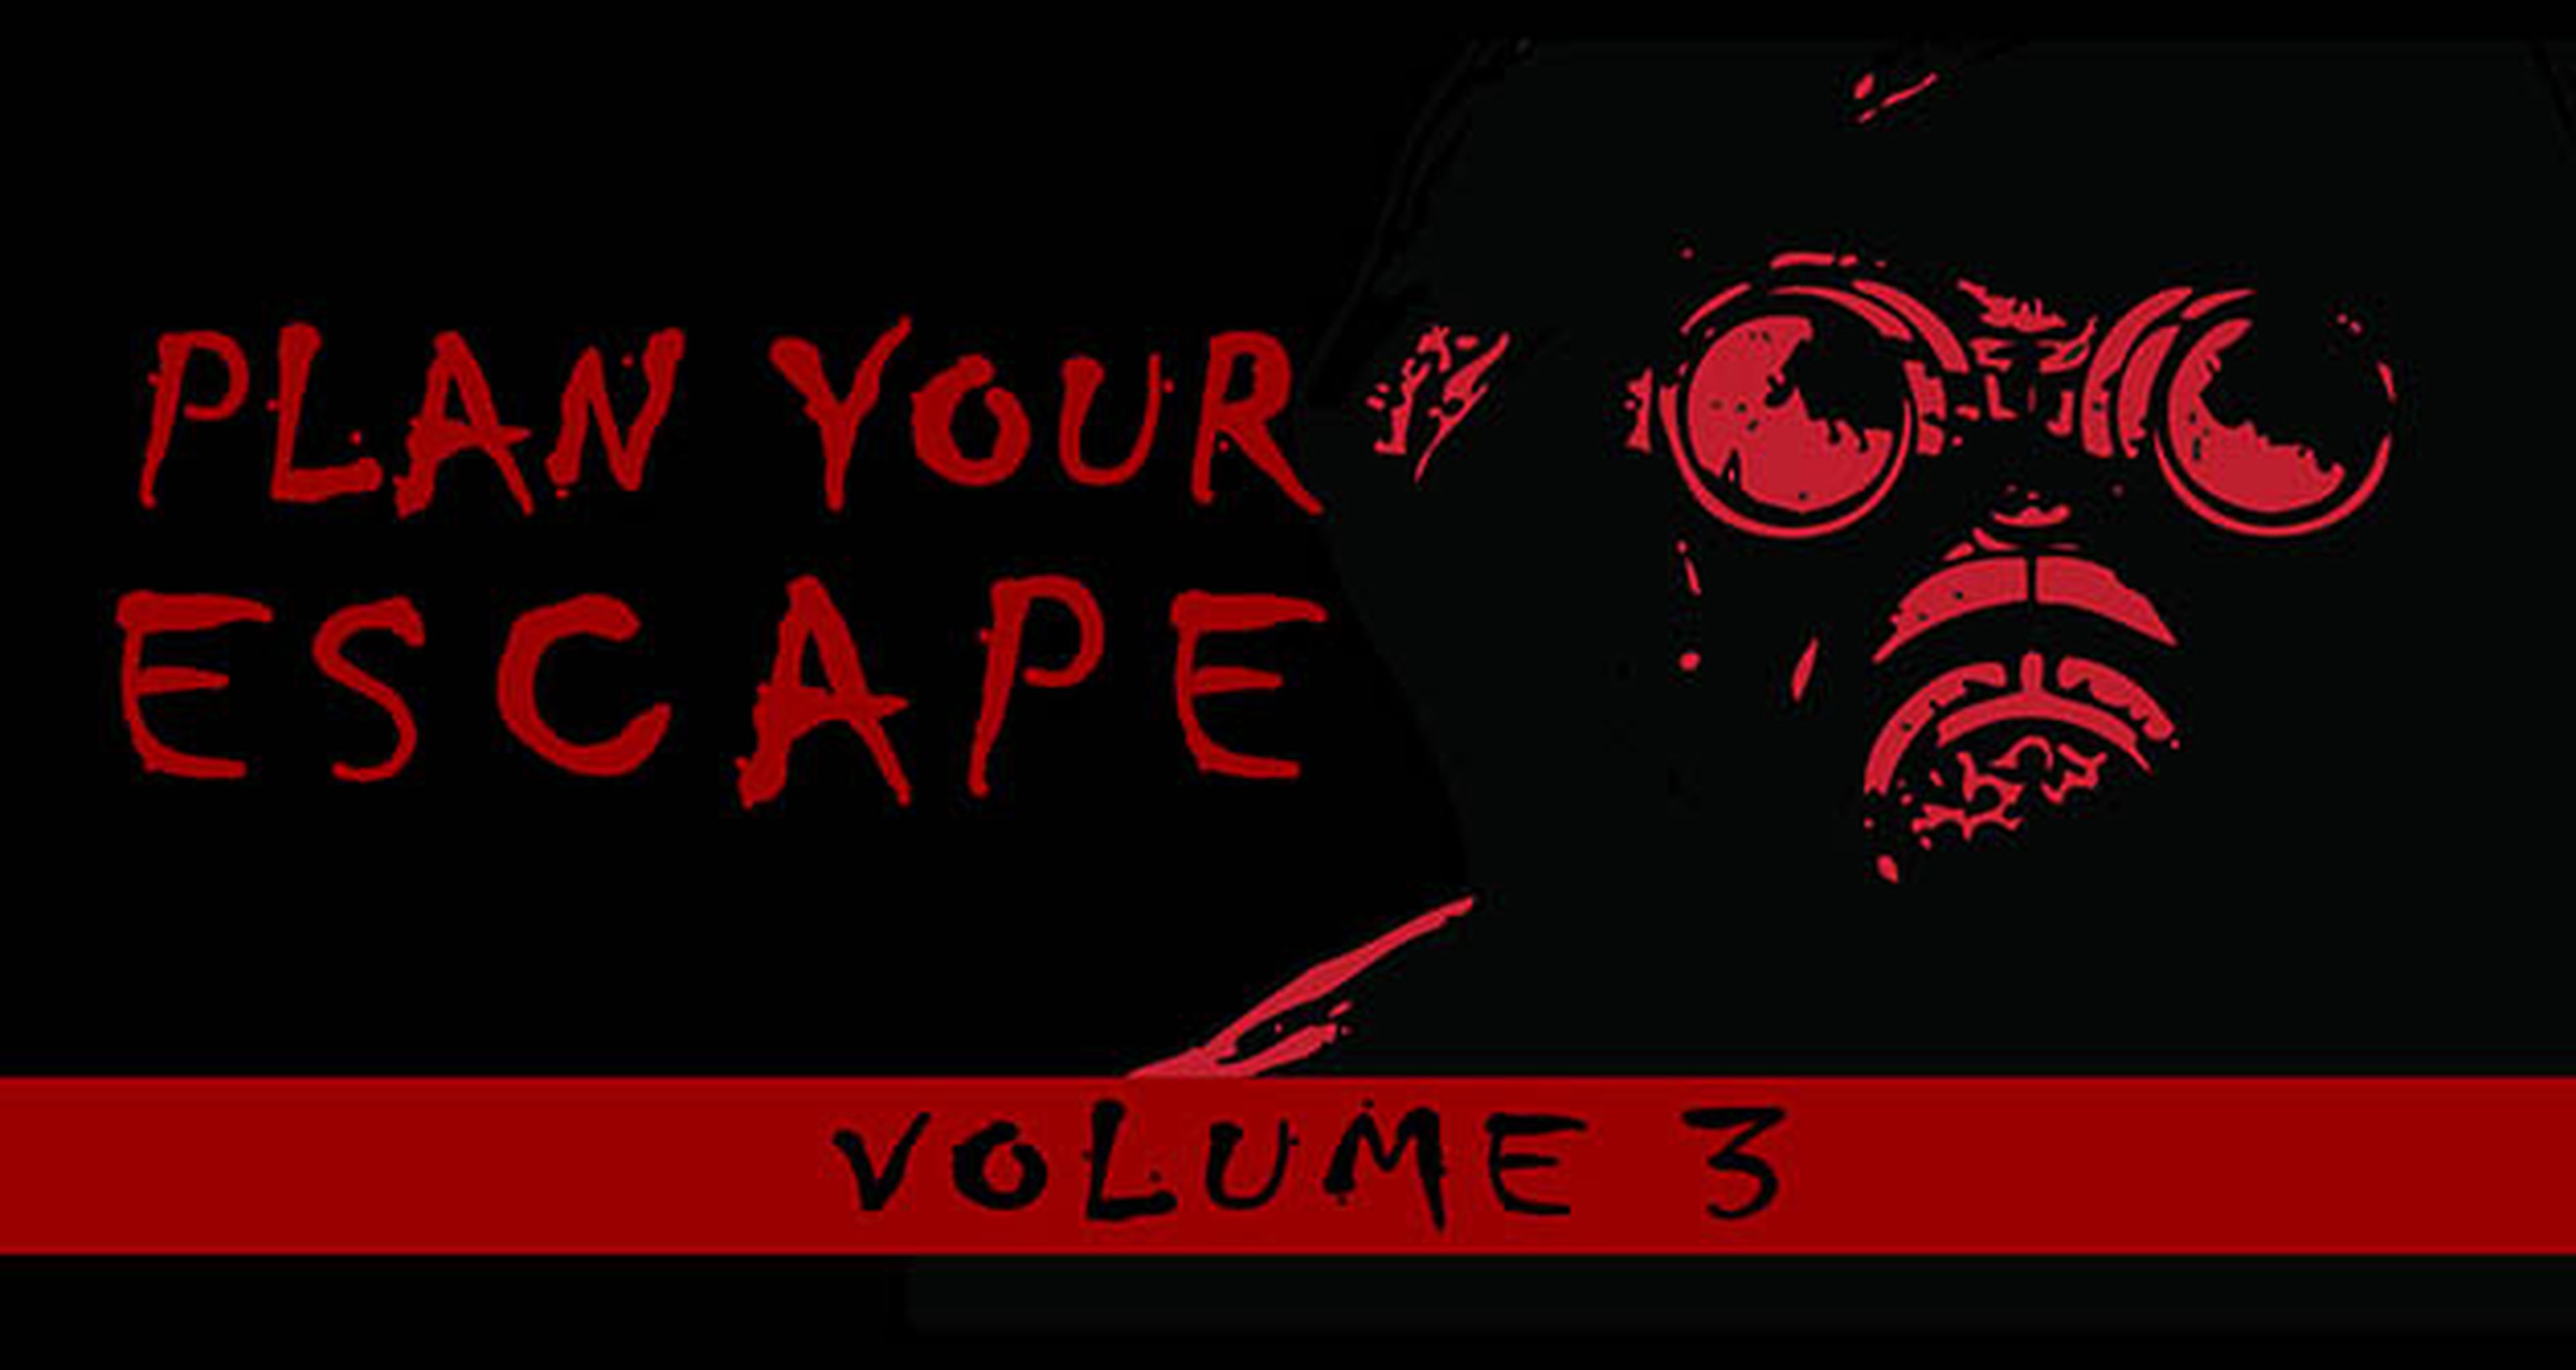 Nuevos detalles acerca de Zero Escape 3 para Vita y 3DS